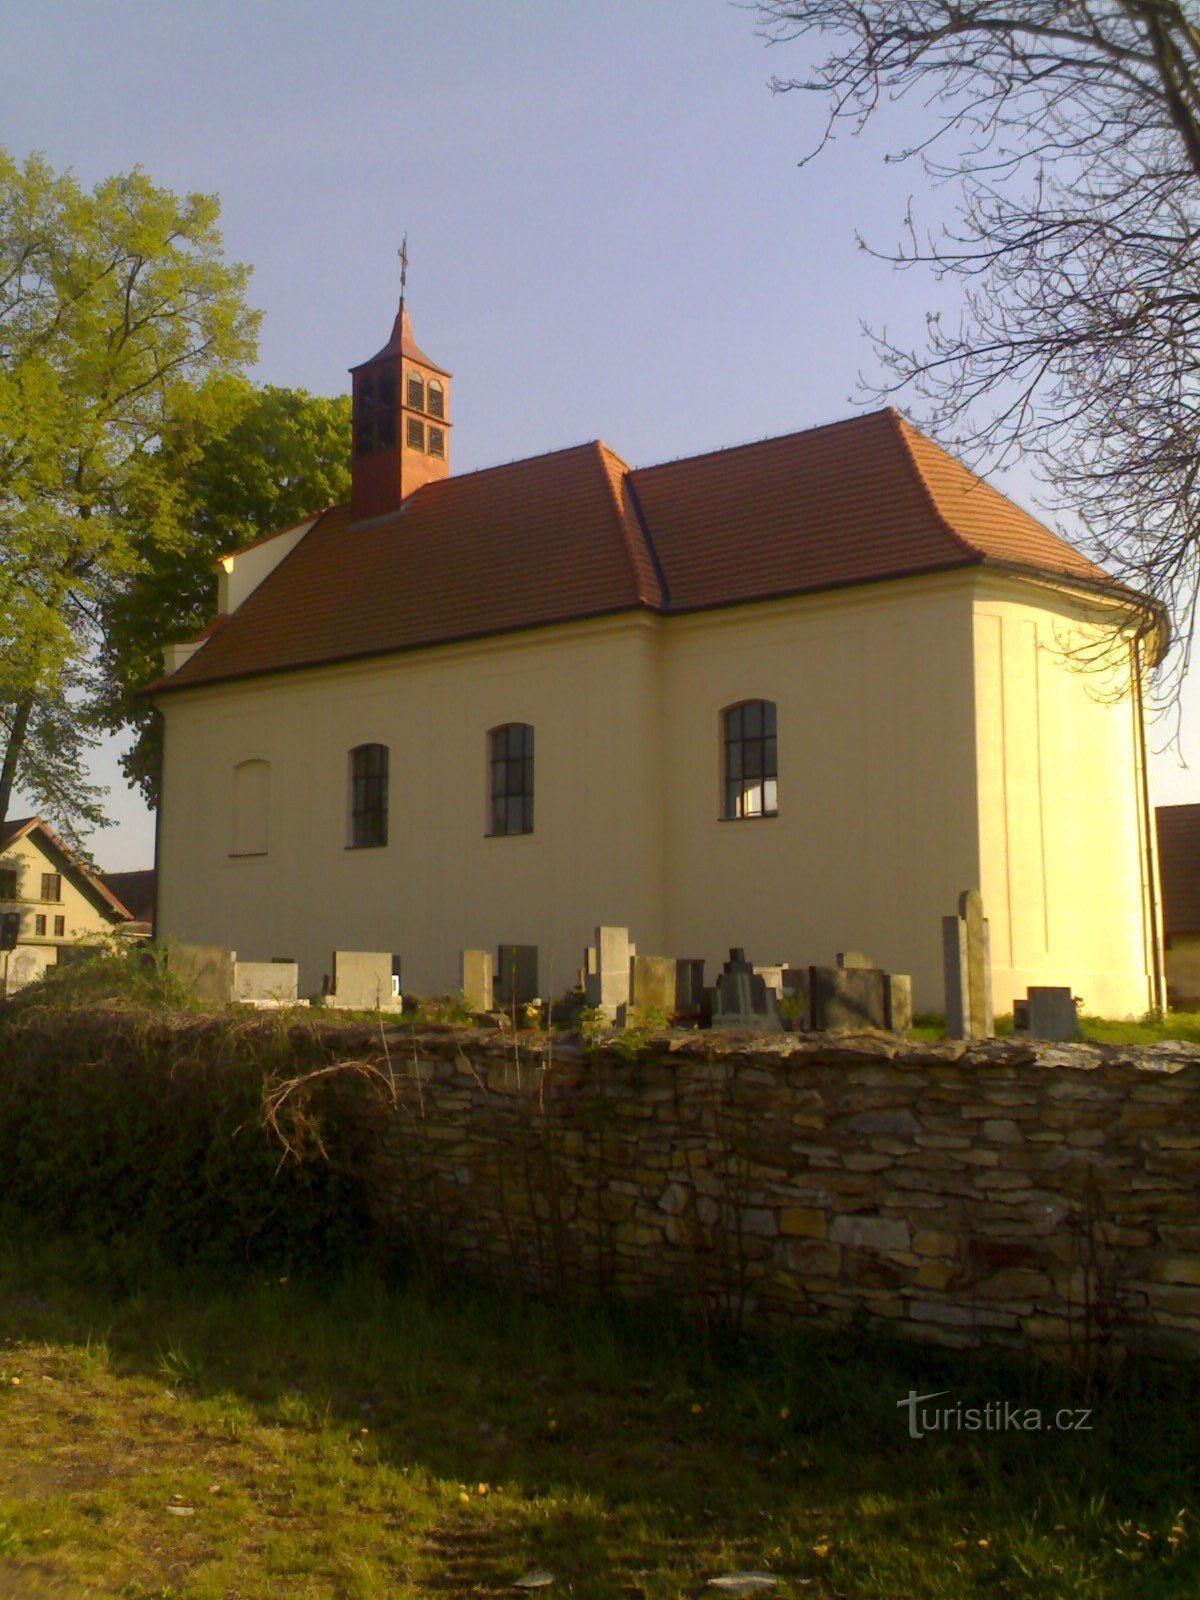 Krňovice - Kirche